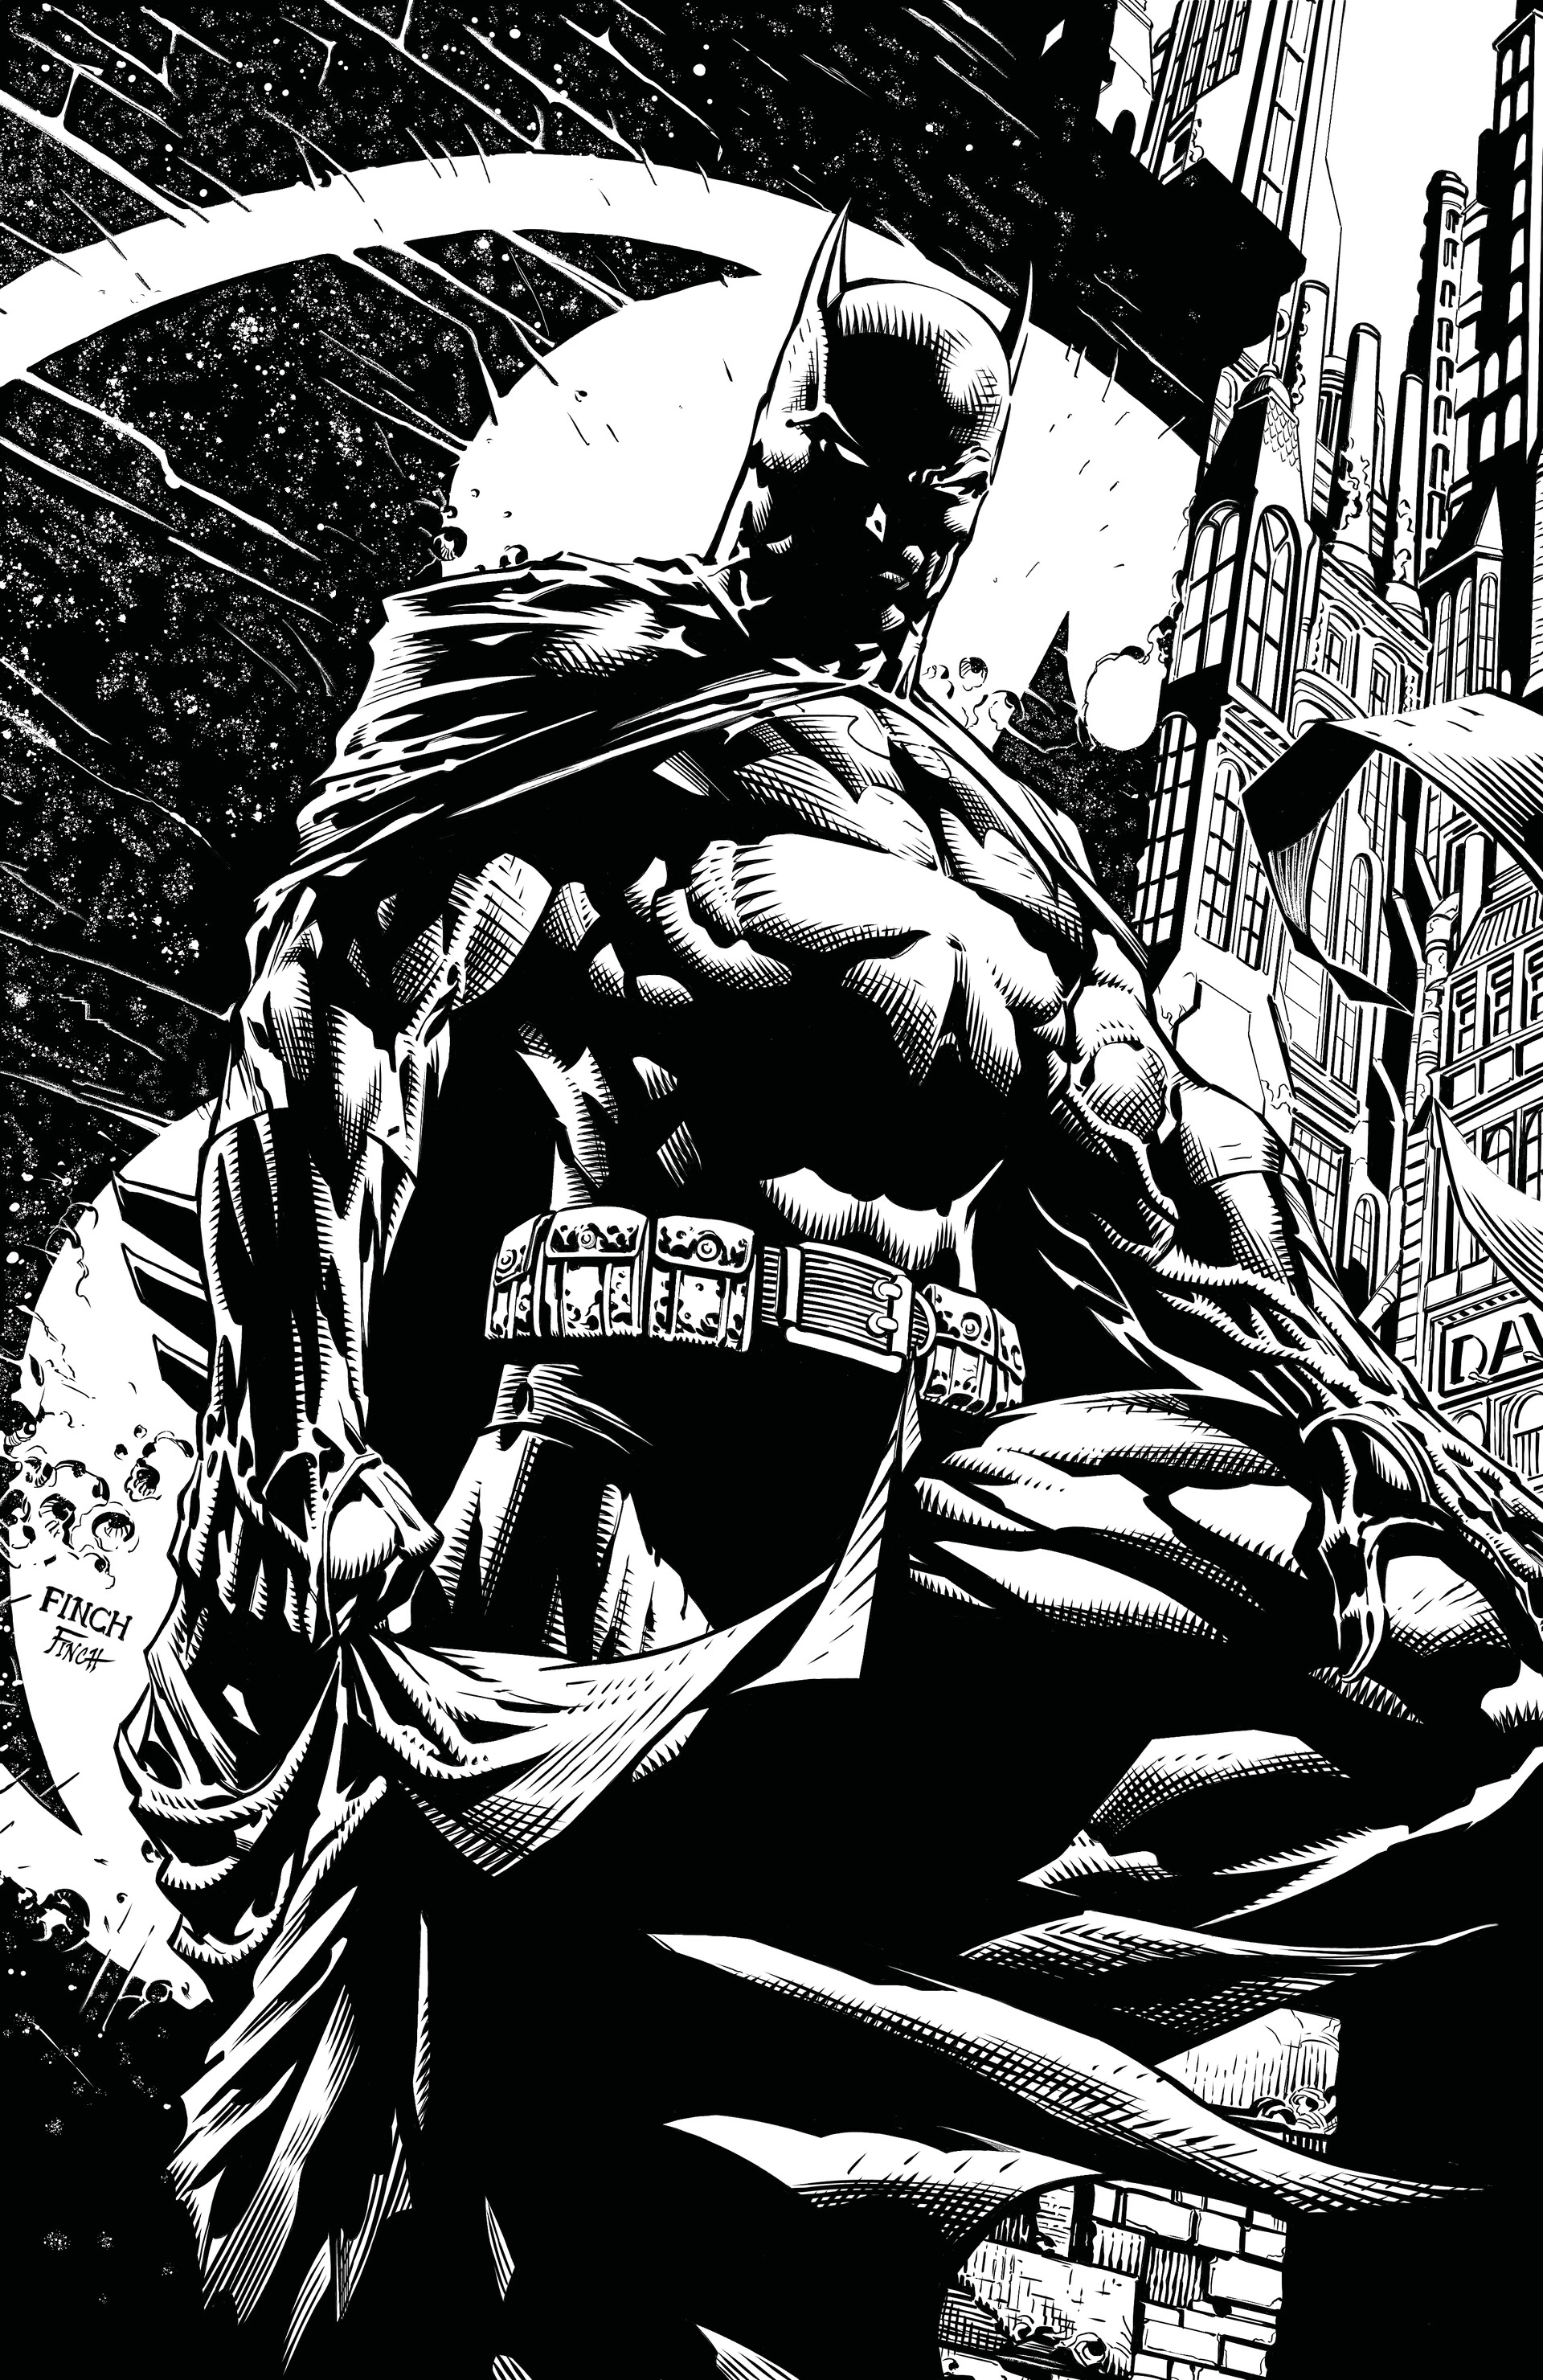 ArtStation - The Dark Knight - Batman Inks